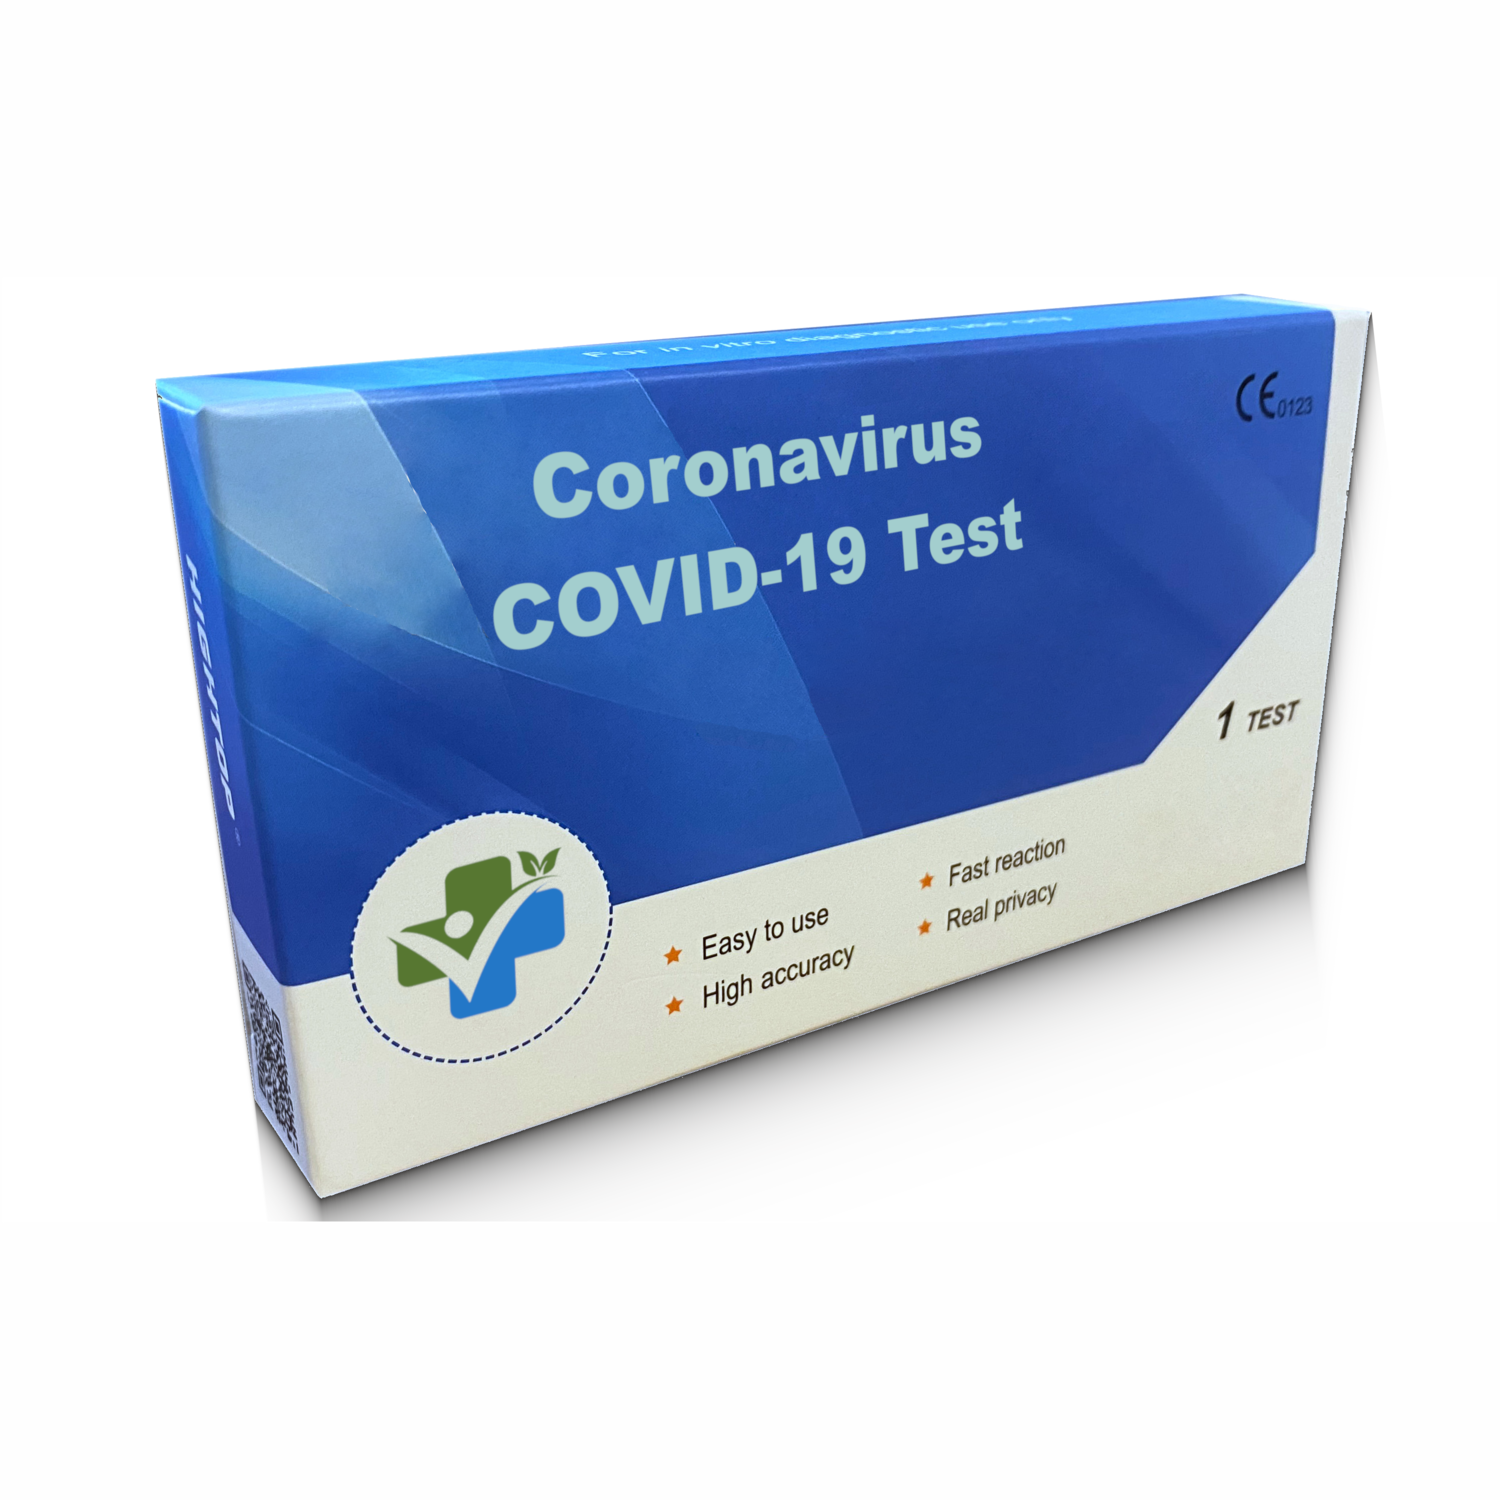 COVID-19 Antigen LFD test